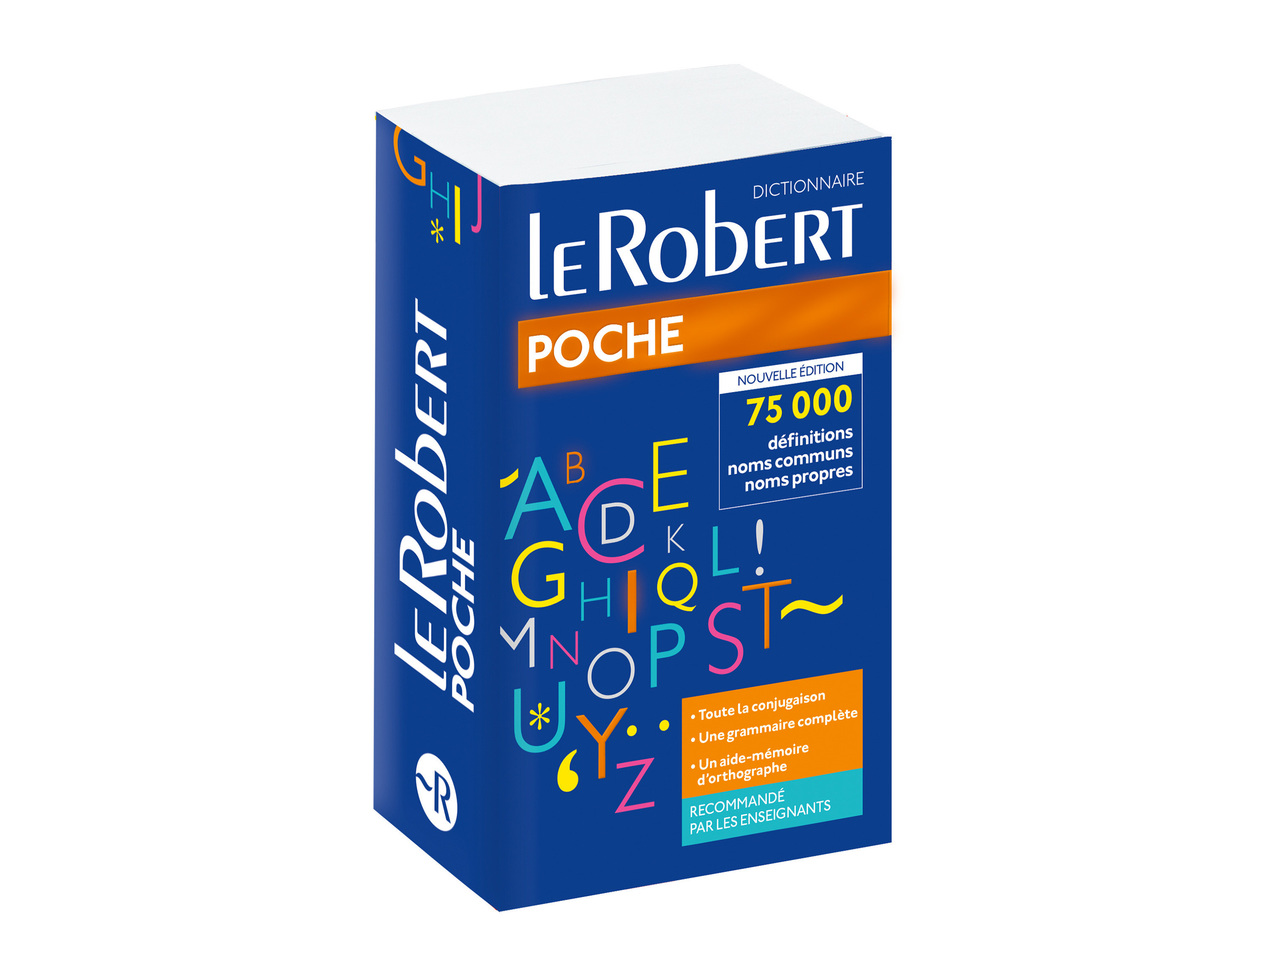 Dictionnaire de Poche " Le Robert "